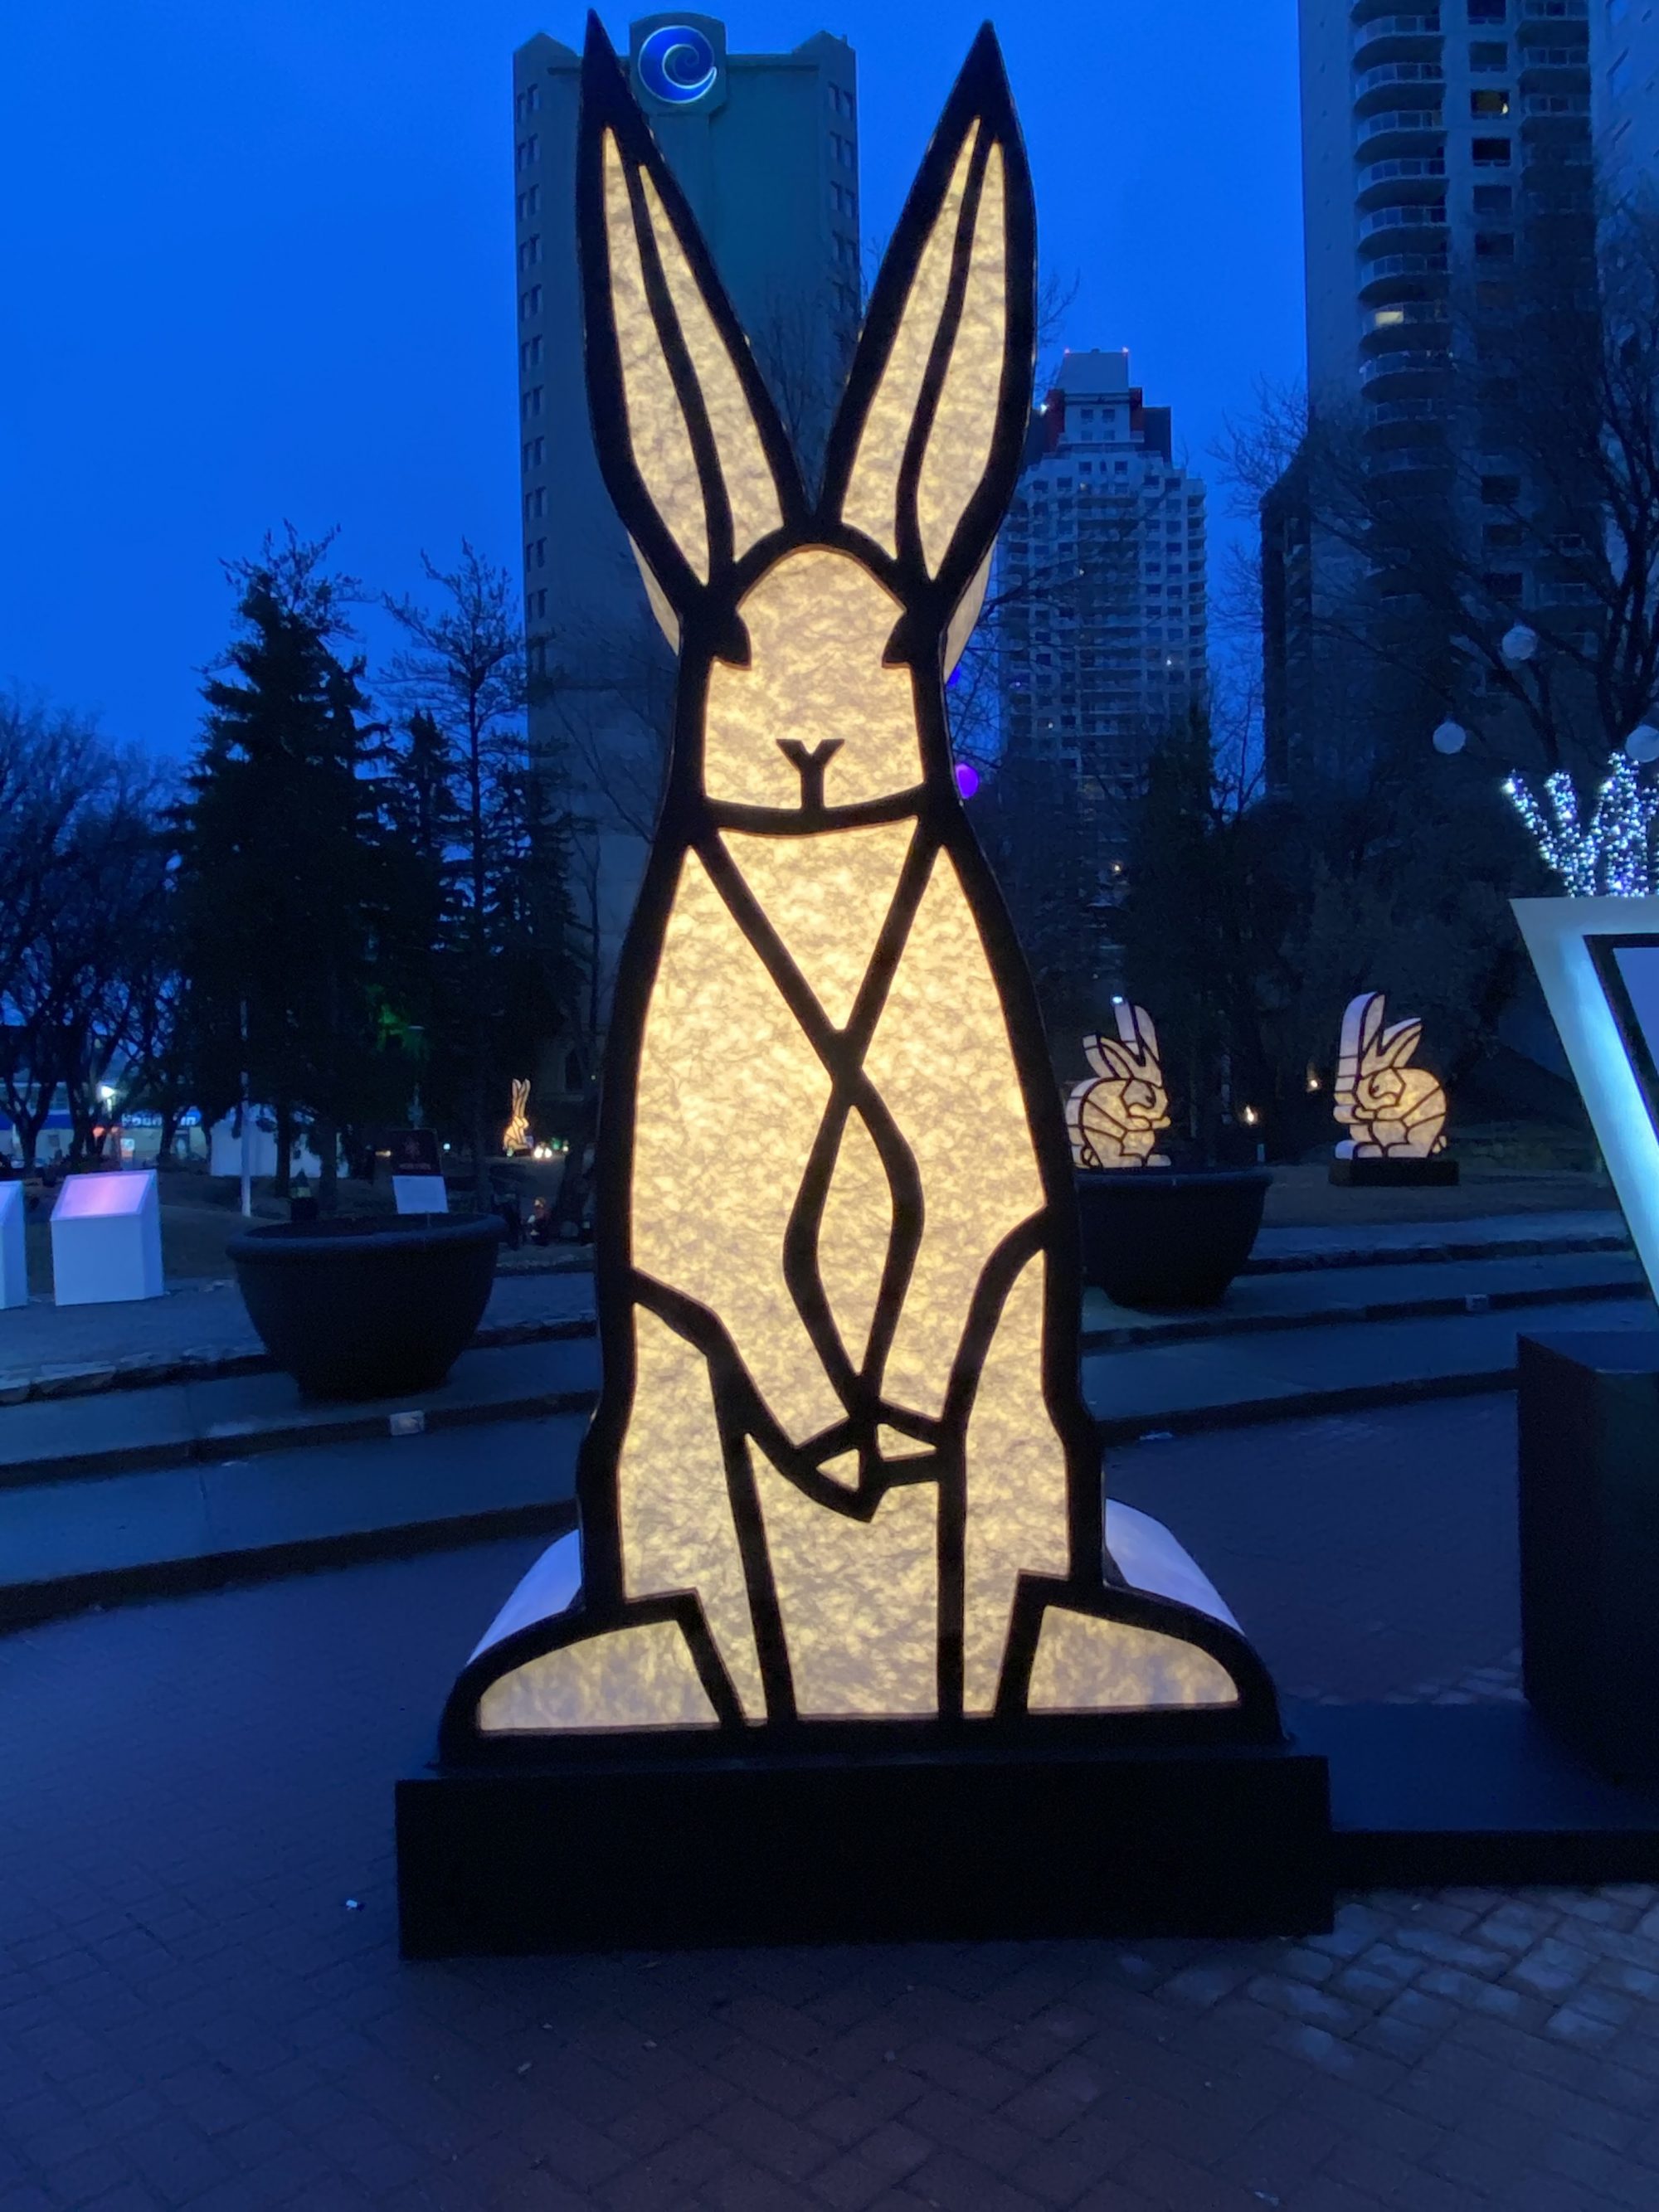  a sculpture of rabbit standing tall